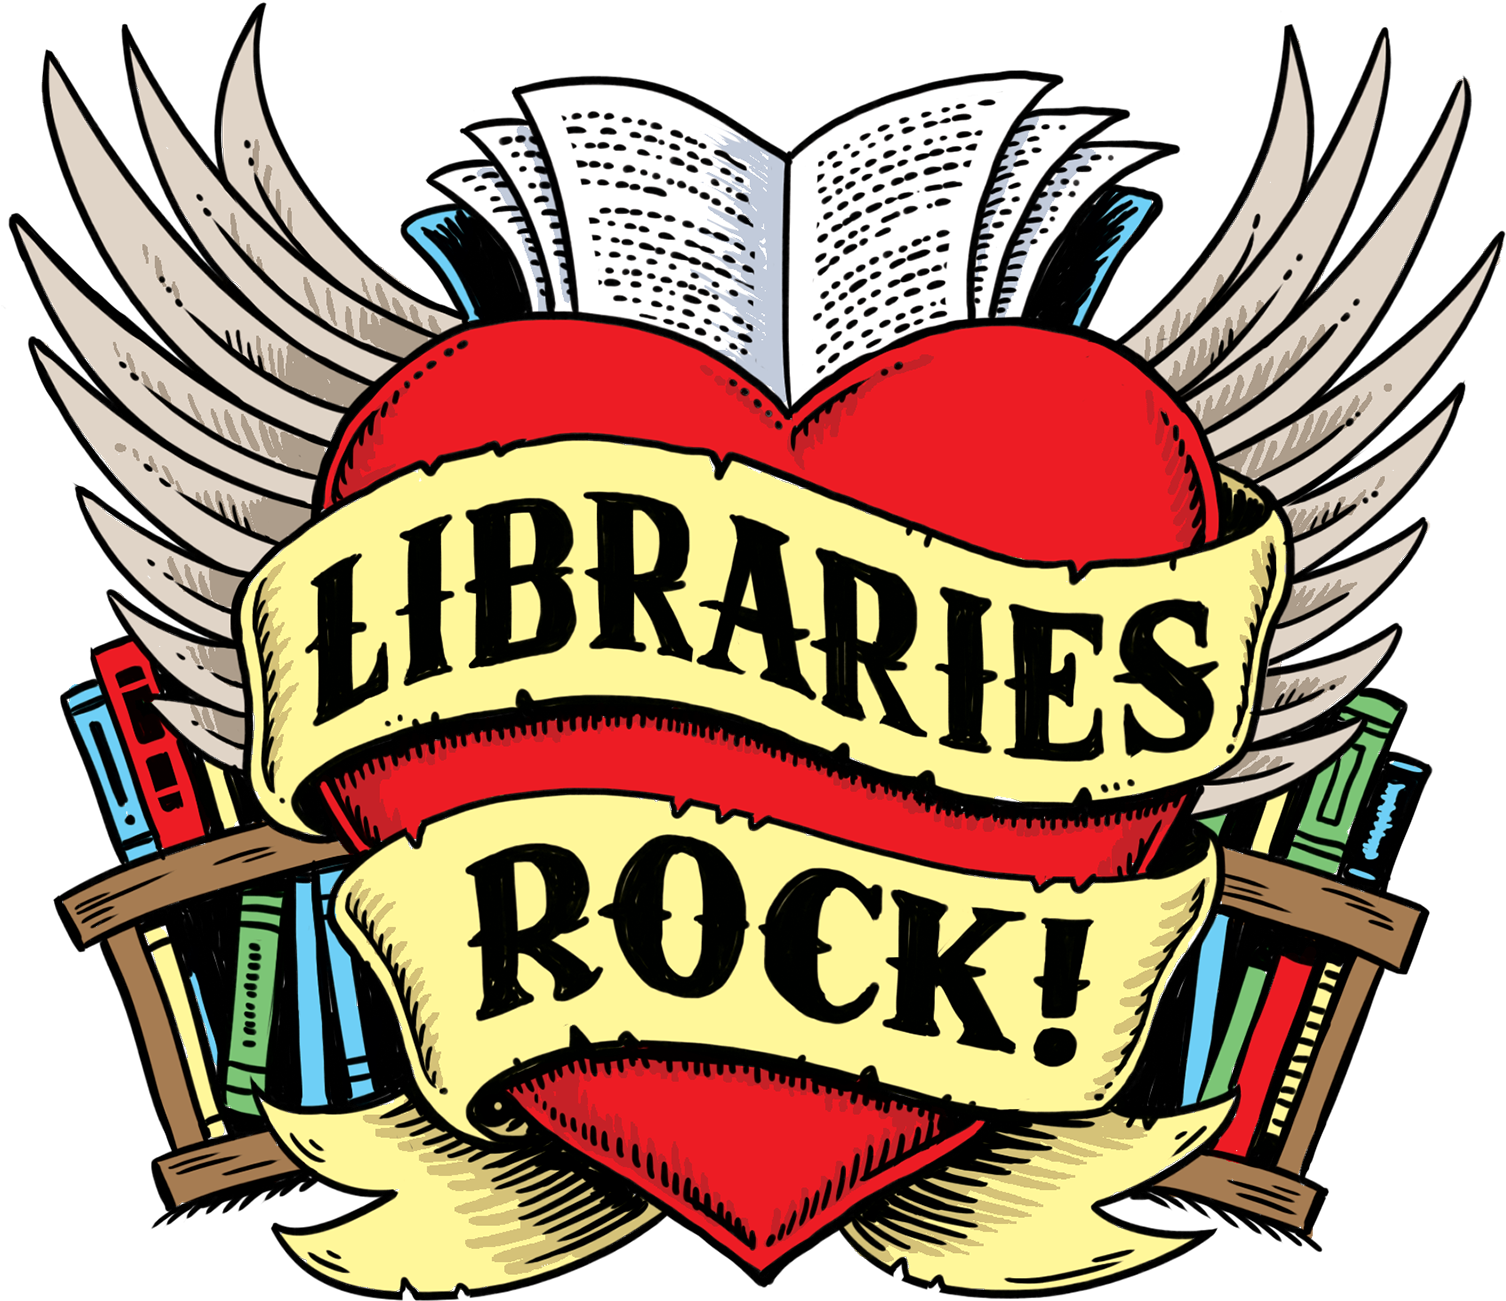 Summer Reading Program - Summer Reading Libraries Rock (2290x1875)